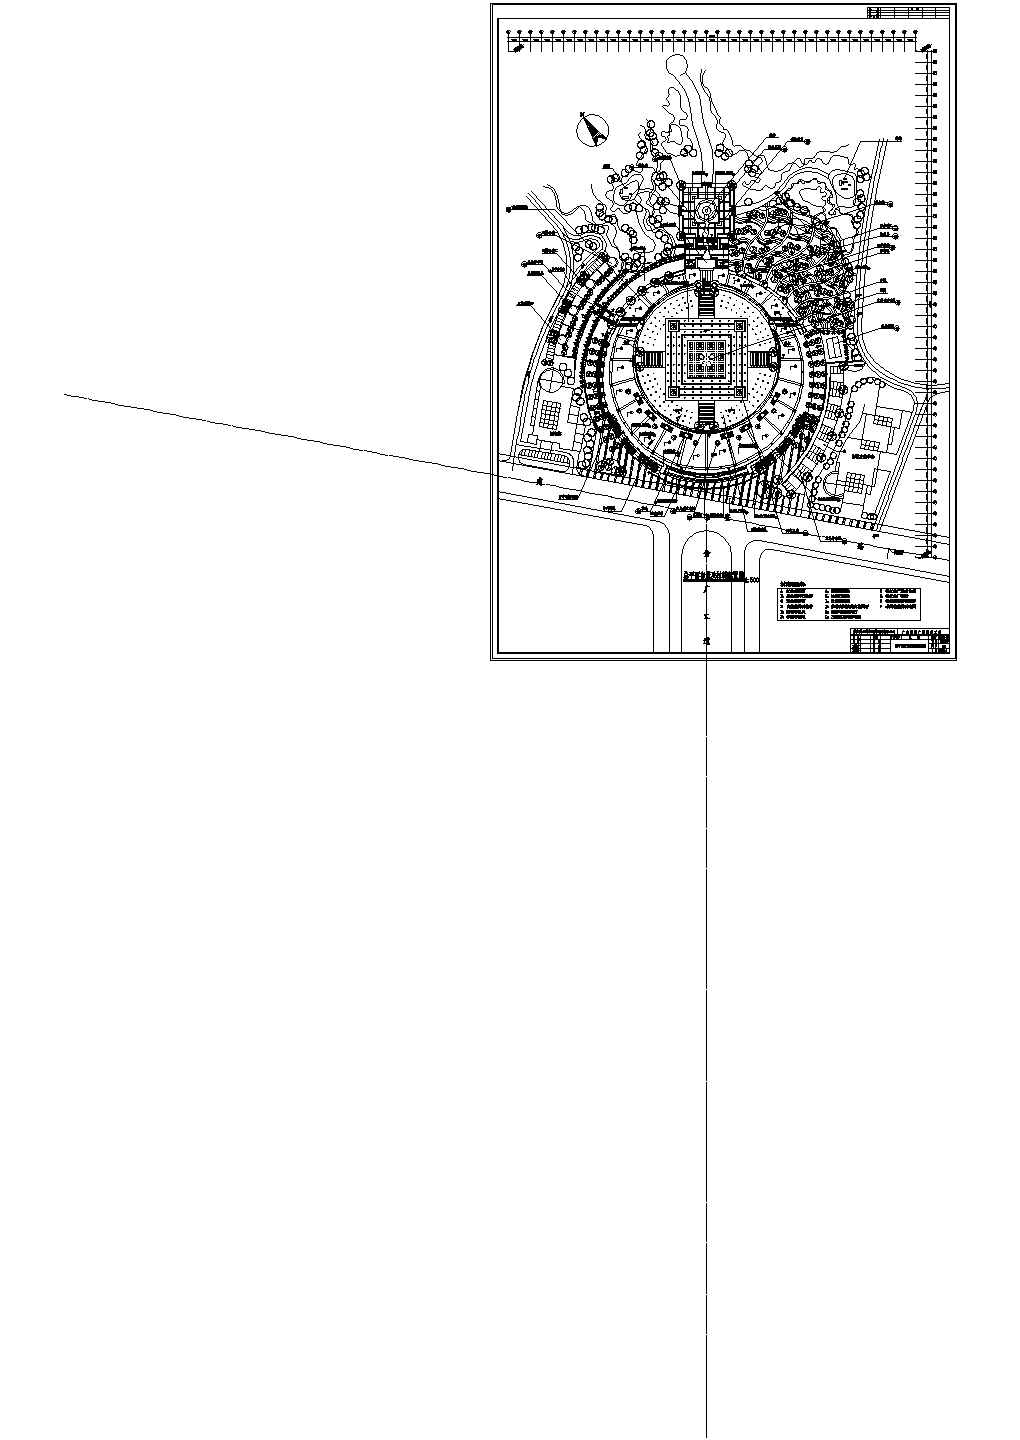 重庆广安思源广场景观工程CAD全套施工图-总图-13